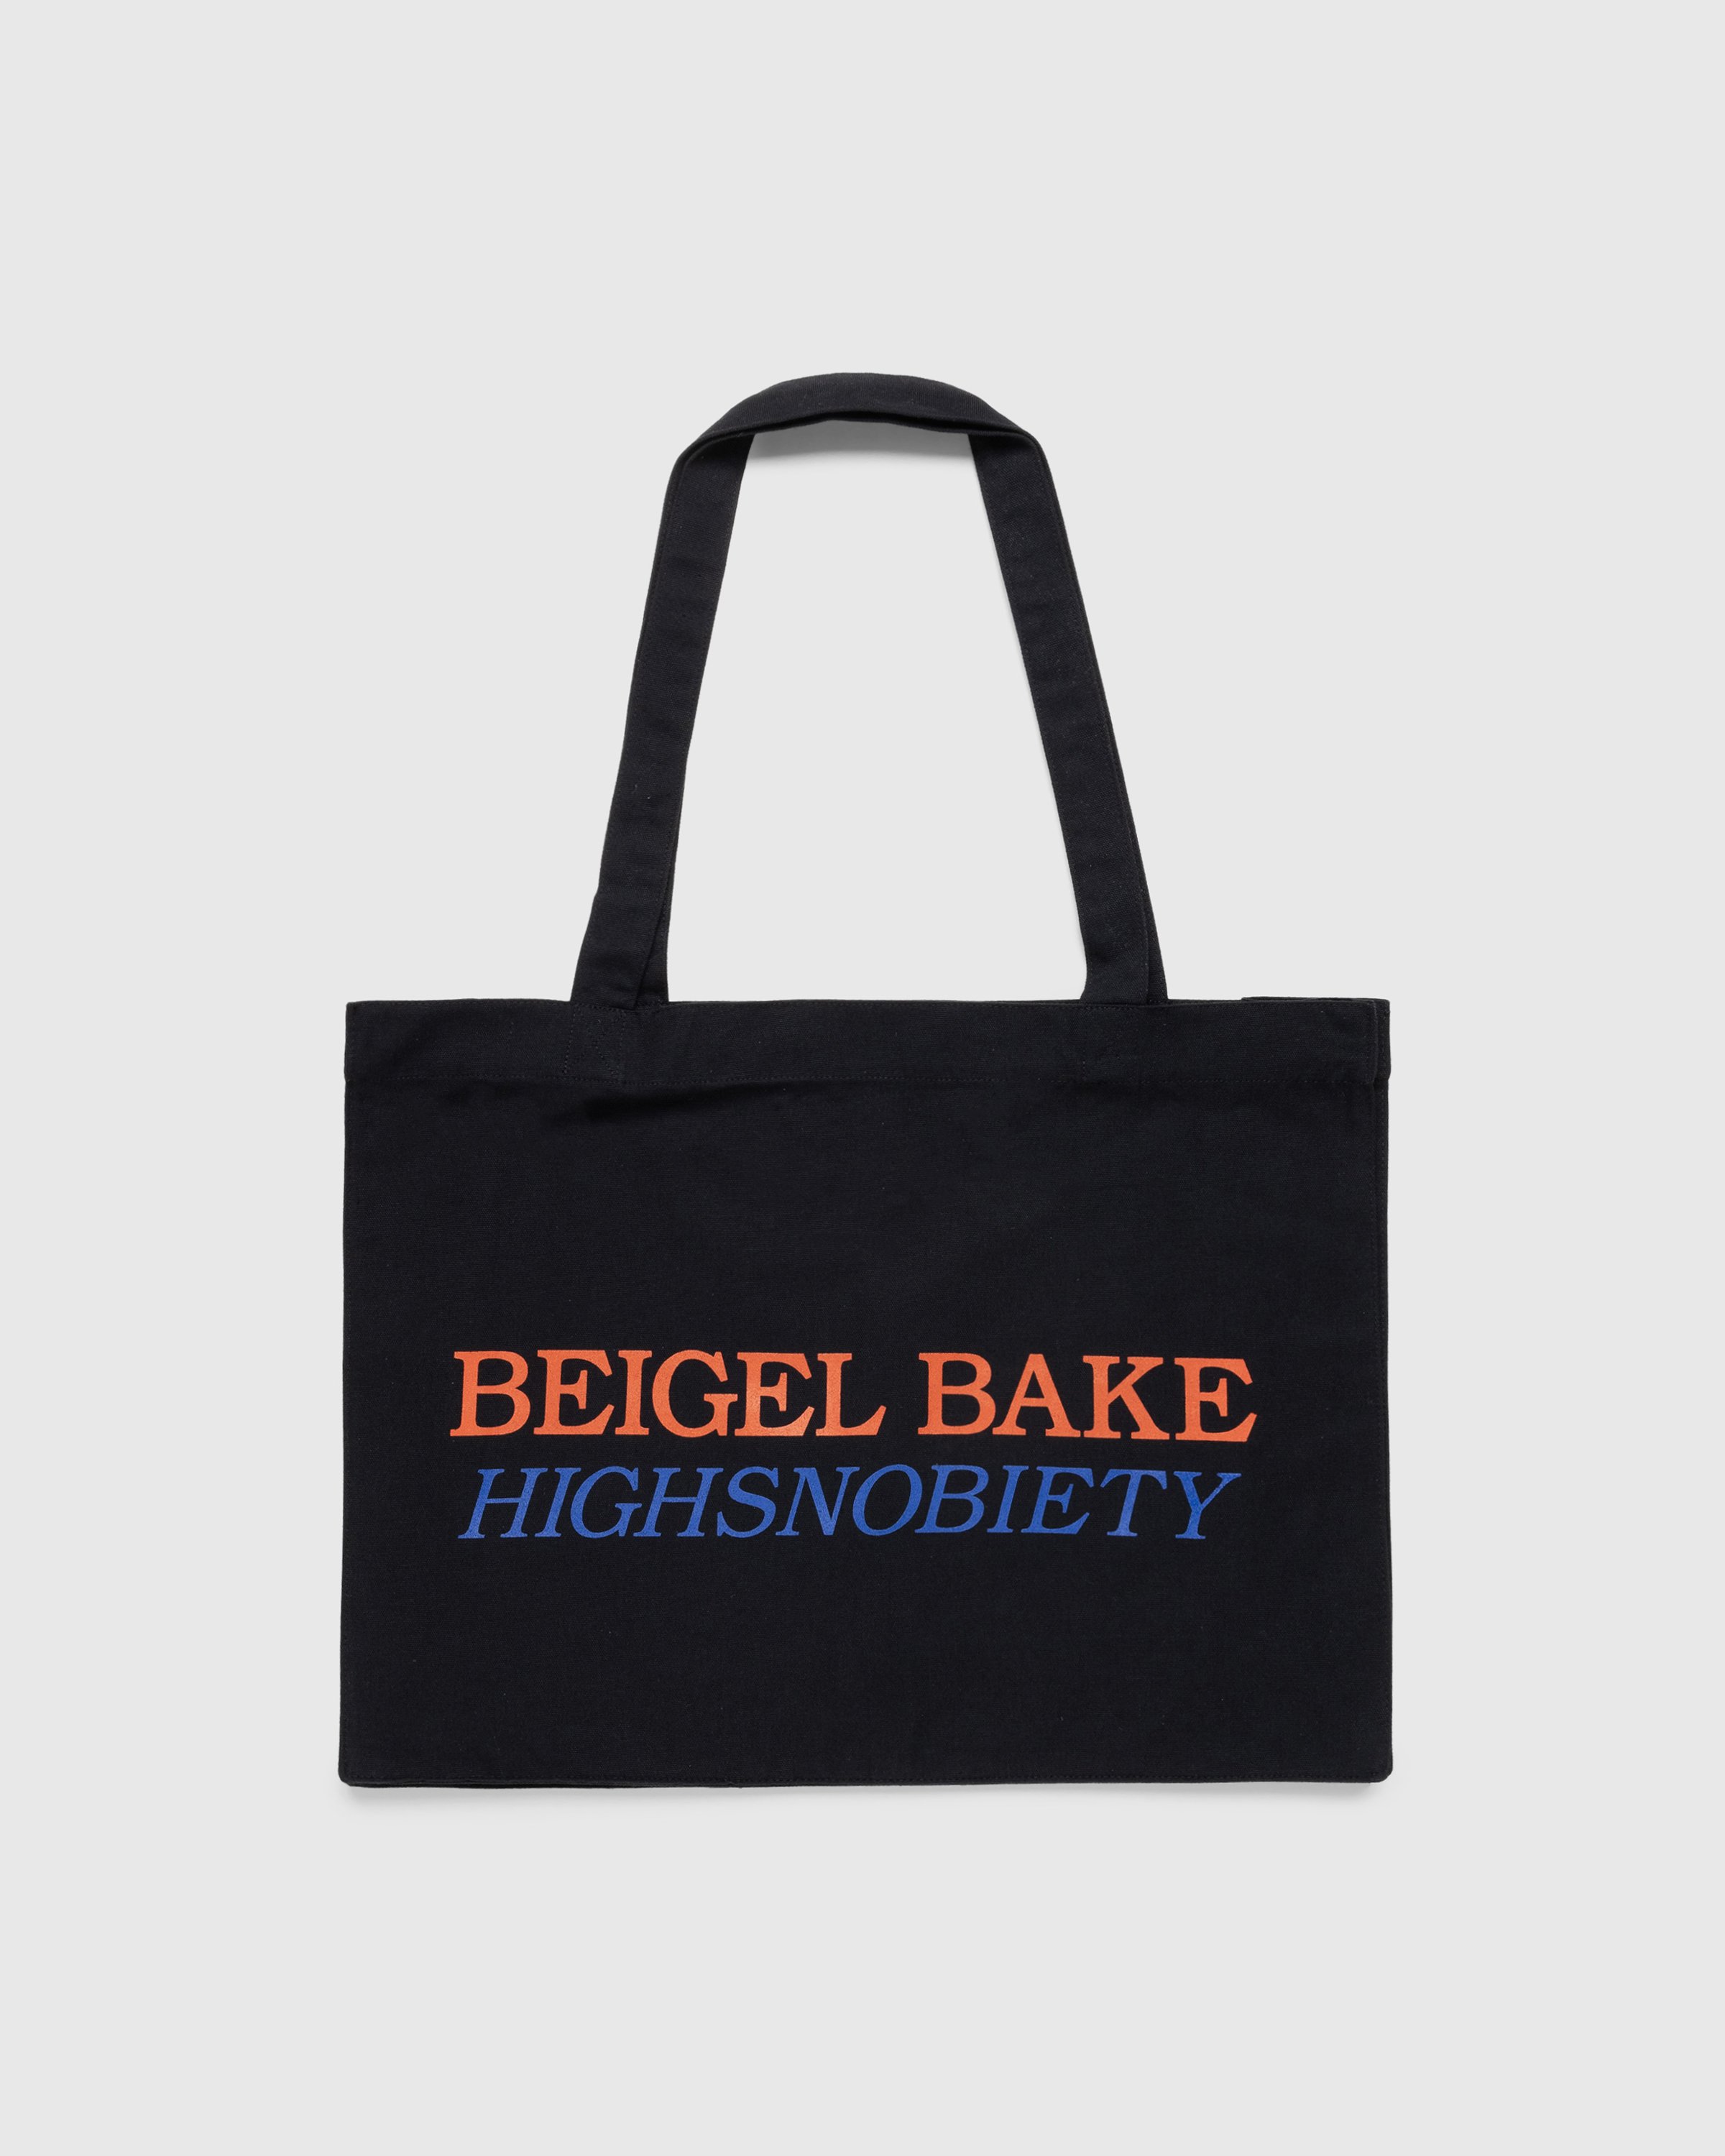 Beigel Bake x Highsnobiety - Beigel Bake Black Tote - Accessories - Black - Image 1